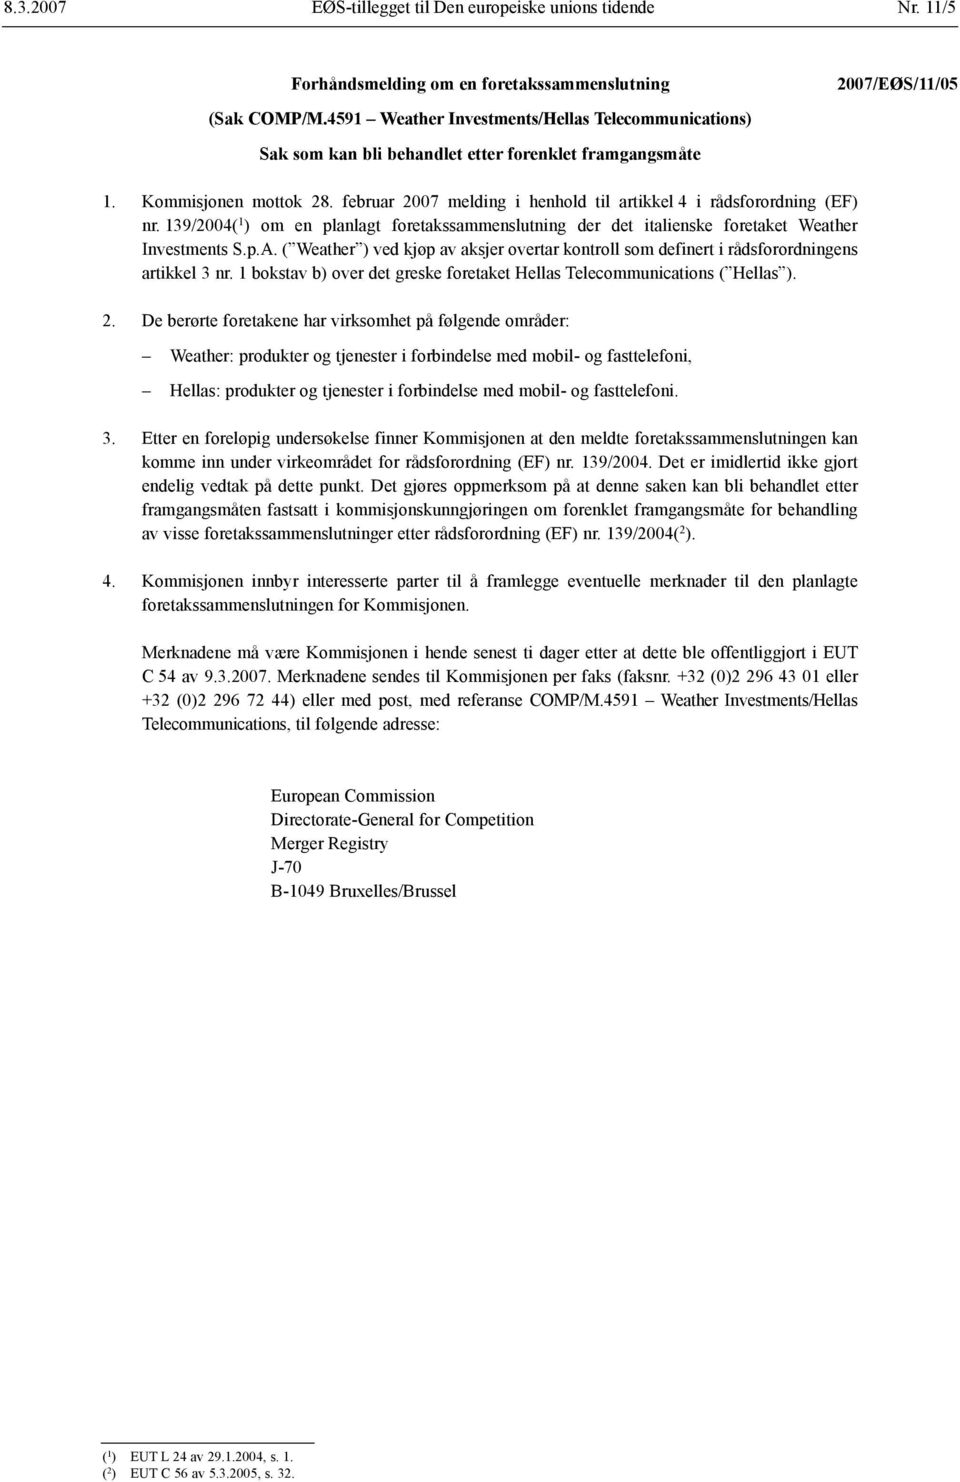 februar 2007 melding i henhold til artikkel 4 i rådsforordning (EF) nr. 139/2004( 1 ) om en planlagt foretakssammenslutning der det italienske foretaket Weather Investments S.p.A.